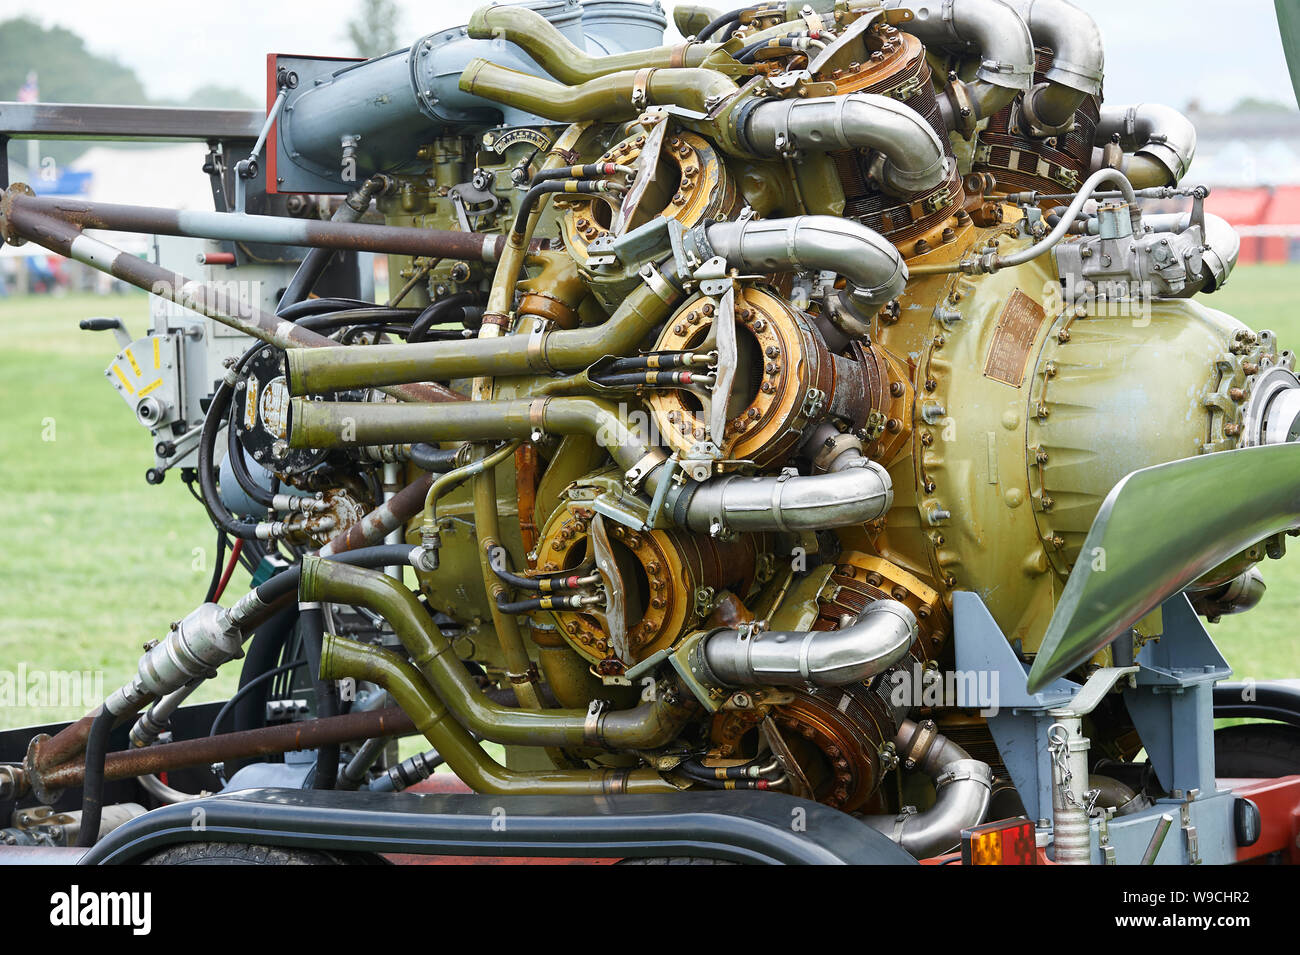 Bristol Hercules Aero Engine è iniziato come una visualizzazione statica a Driffield Rally di vapore, UK, GB. Foto Stock